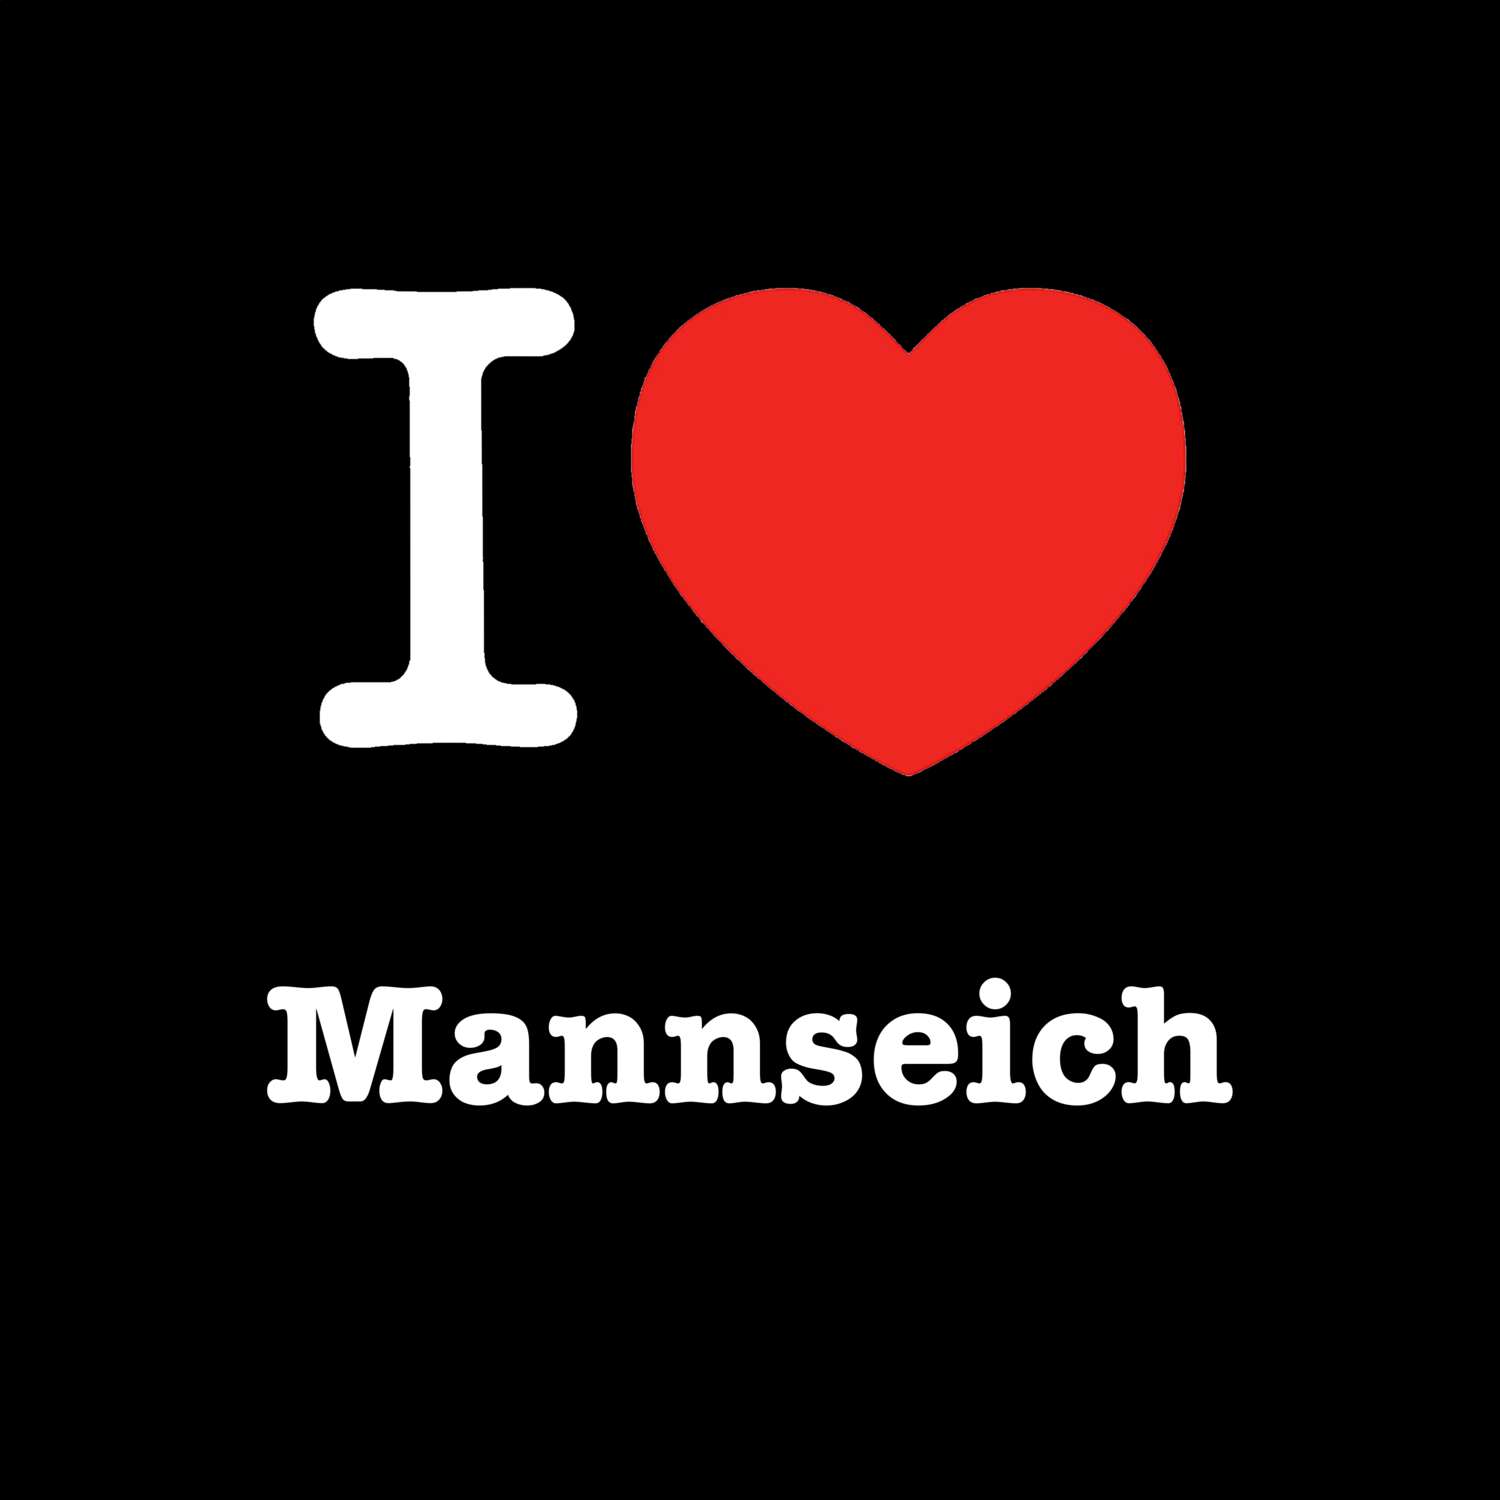 Mannseich T-Shirt »I love«